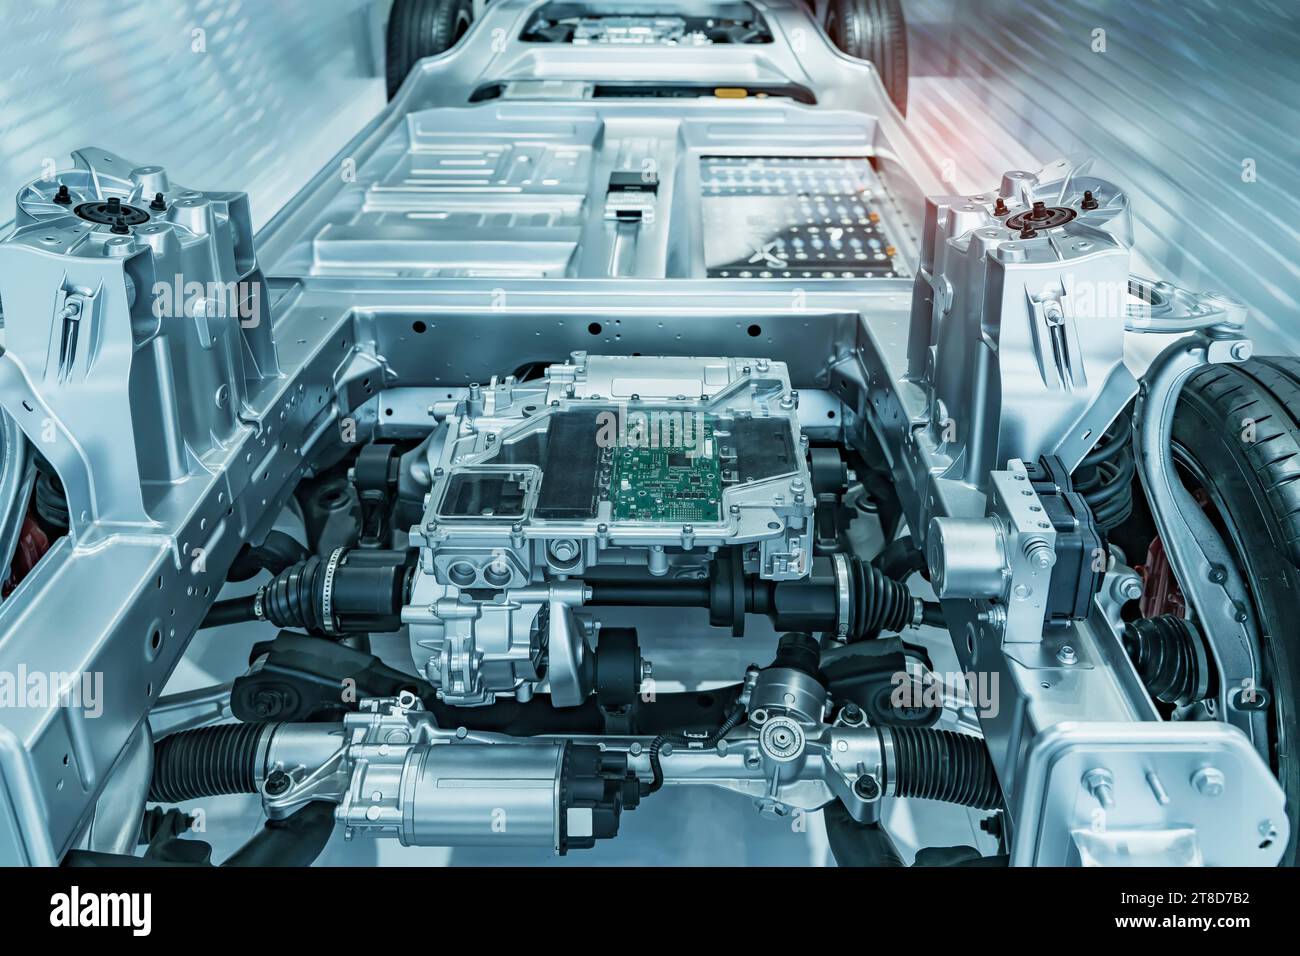 Fahrgestell des Elektroautos mit Antriebsstrang und Stromanschluss, elektrisches System des ECO-Car-Konzepts. Stockfoto